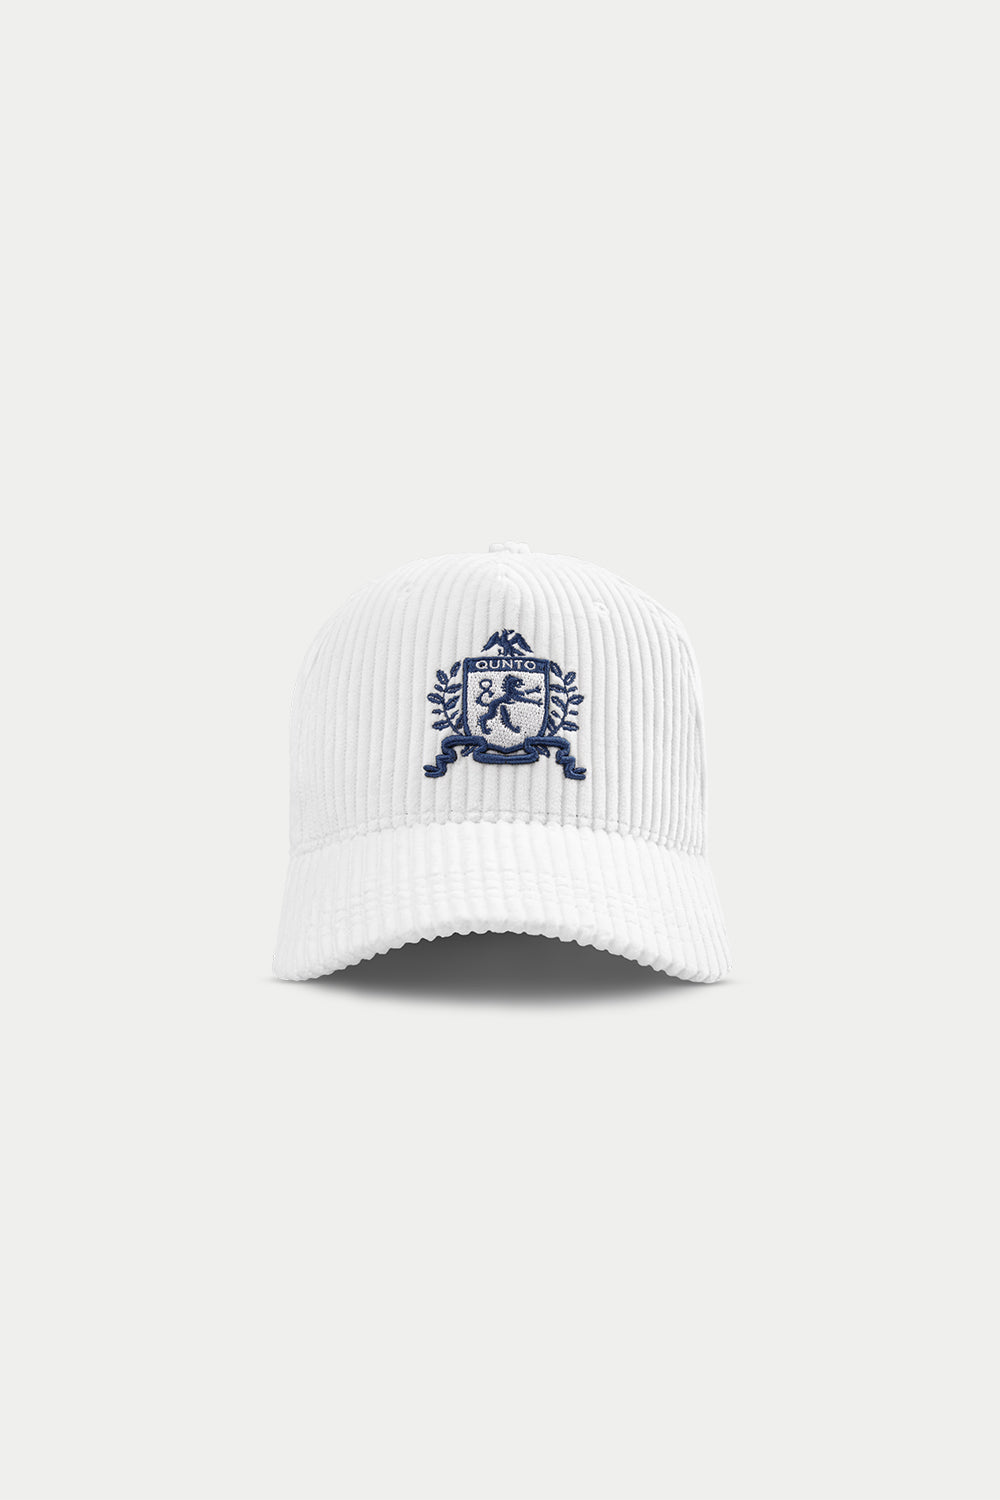 CORDUROY CREST CAP BLUE